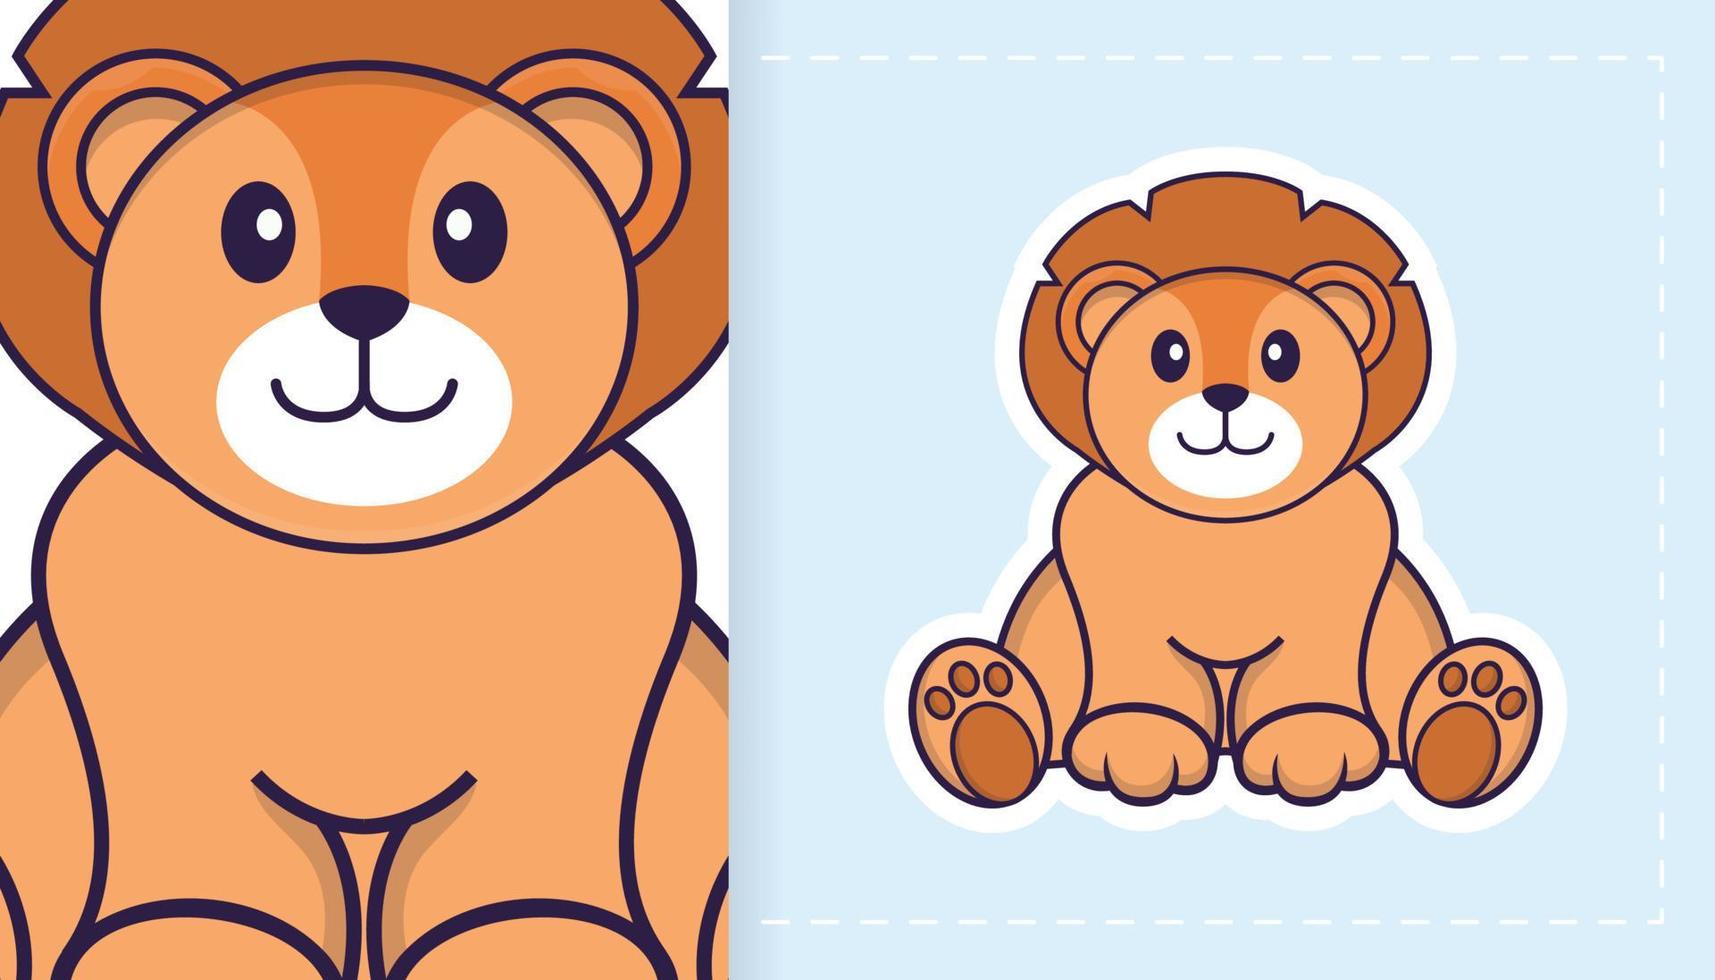 simpatico personaggio mascotte leone. può essere utilizzato per adesivi, toppe, tessuti, carta. illustrazione vettoriale